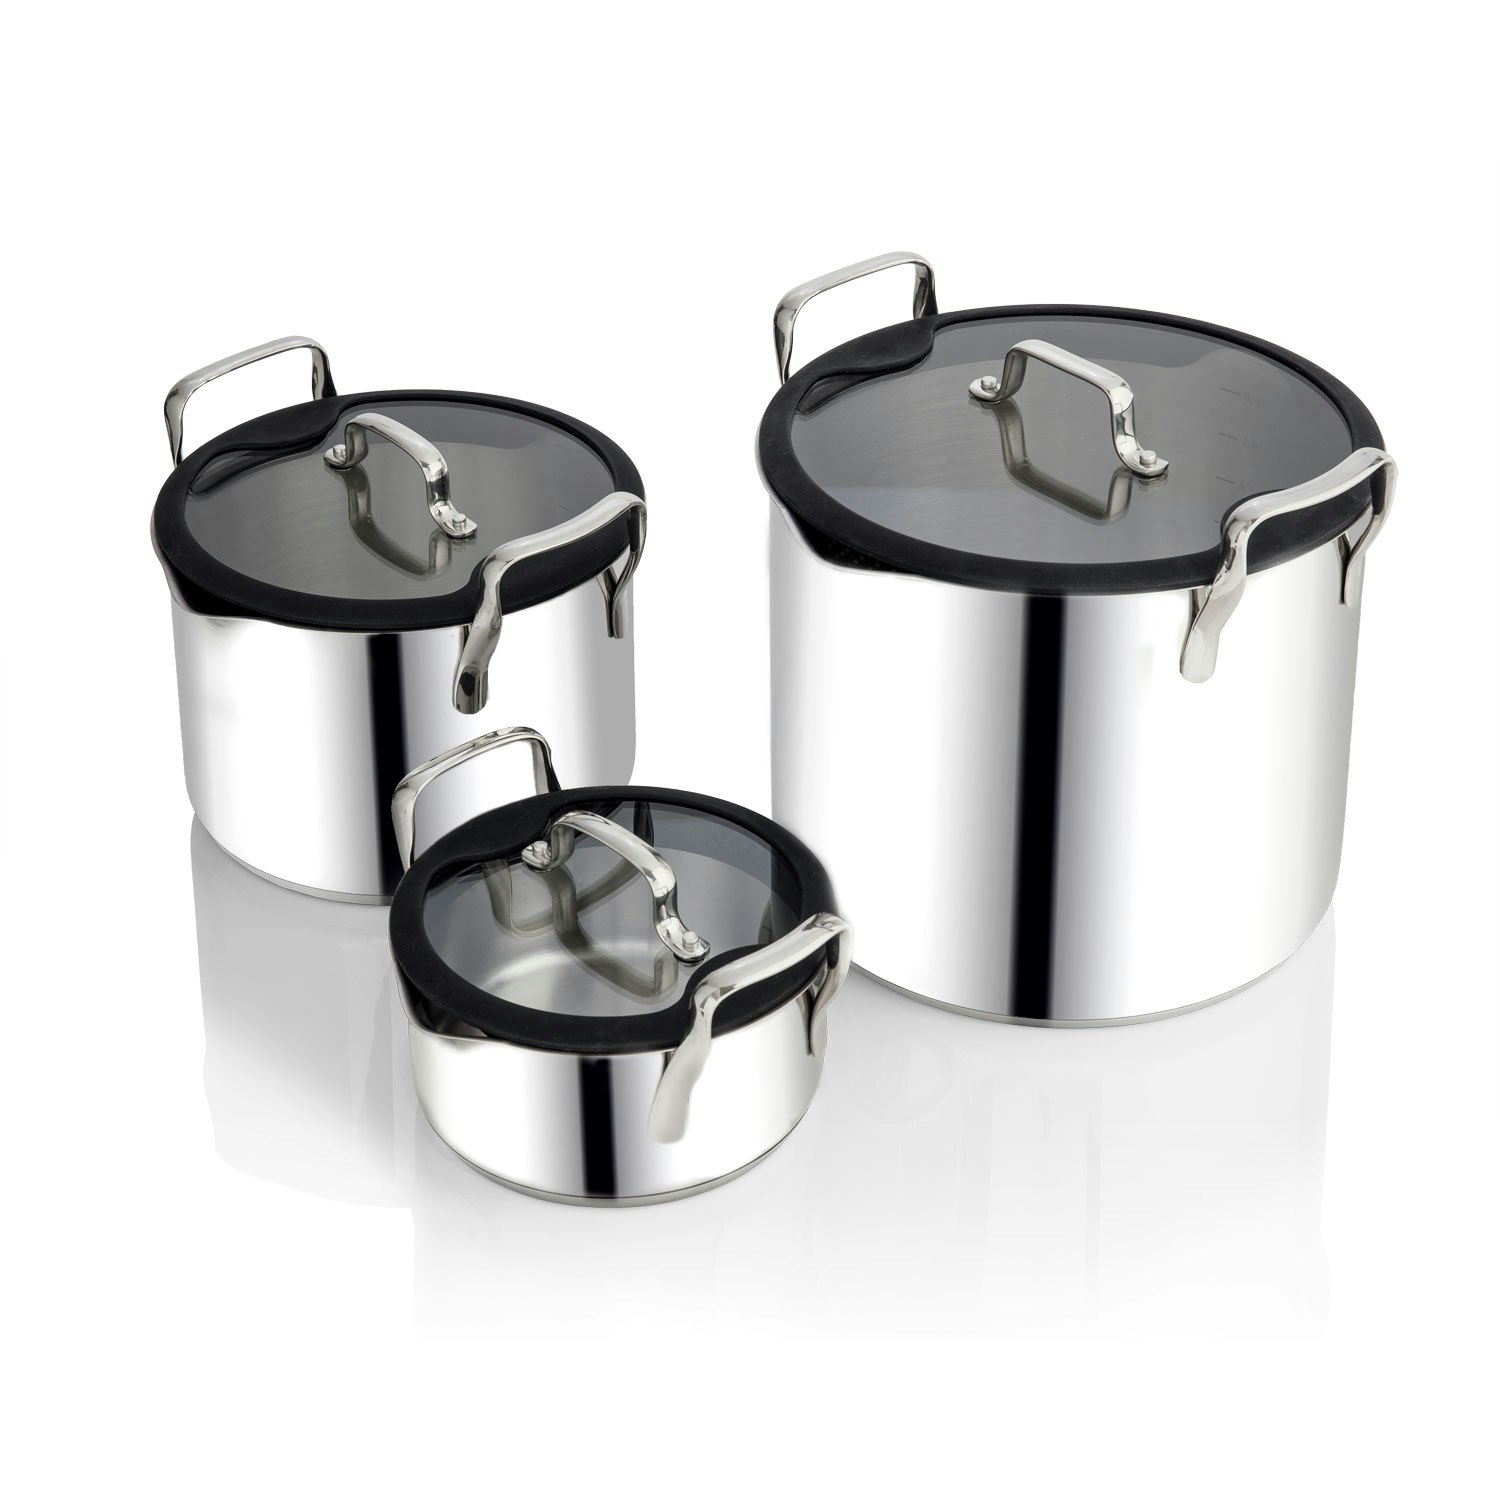 https://royaldesign.com/image/10/ego-stackable-pot-set-stainless-steel-0